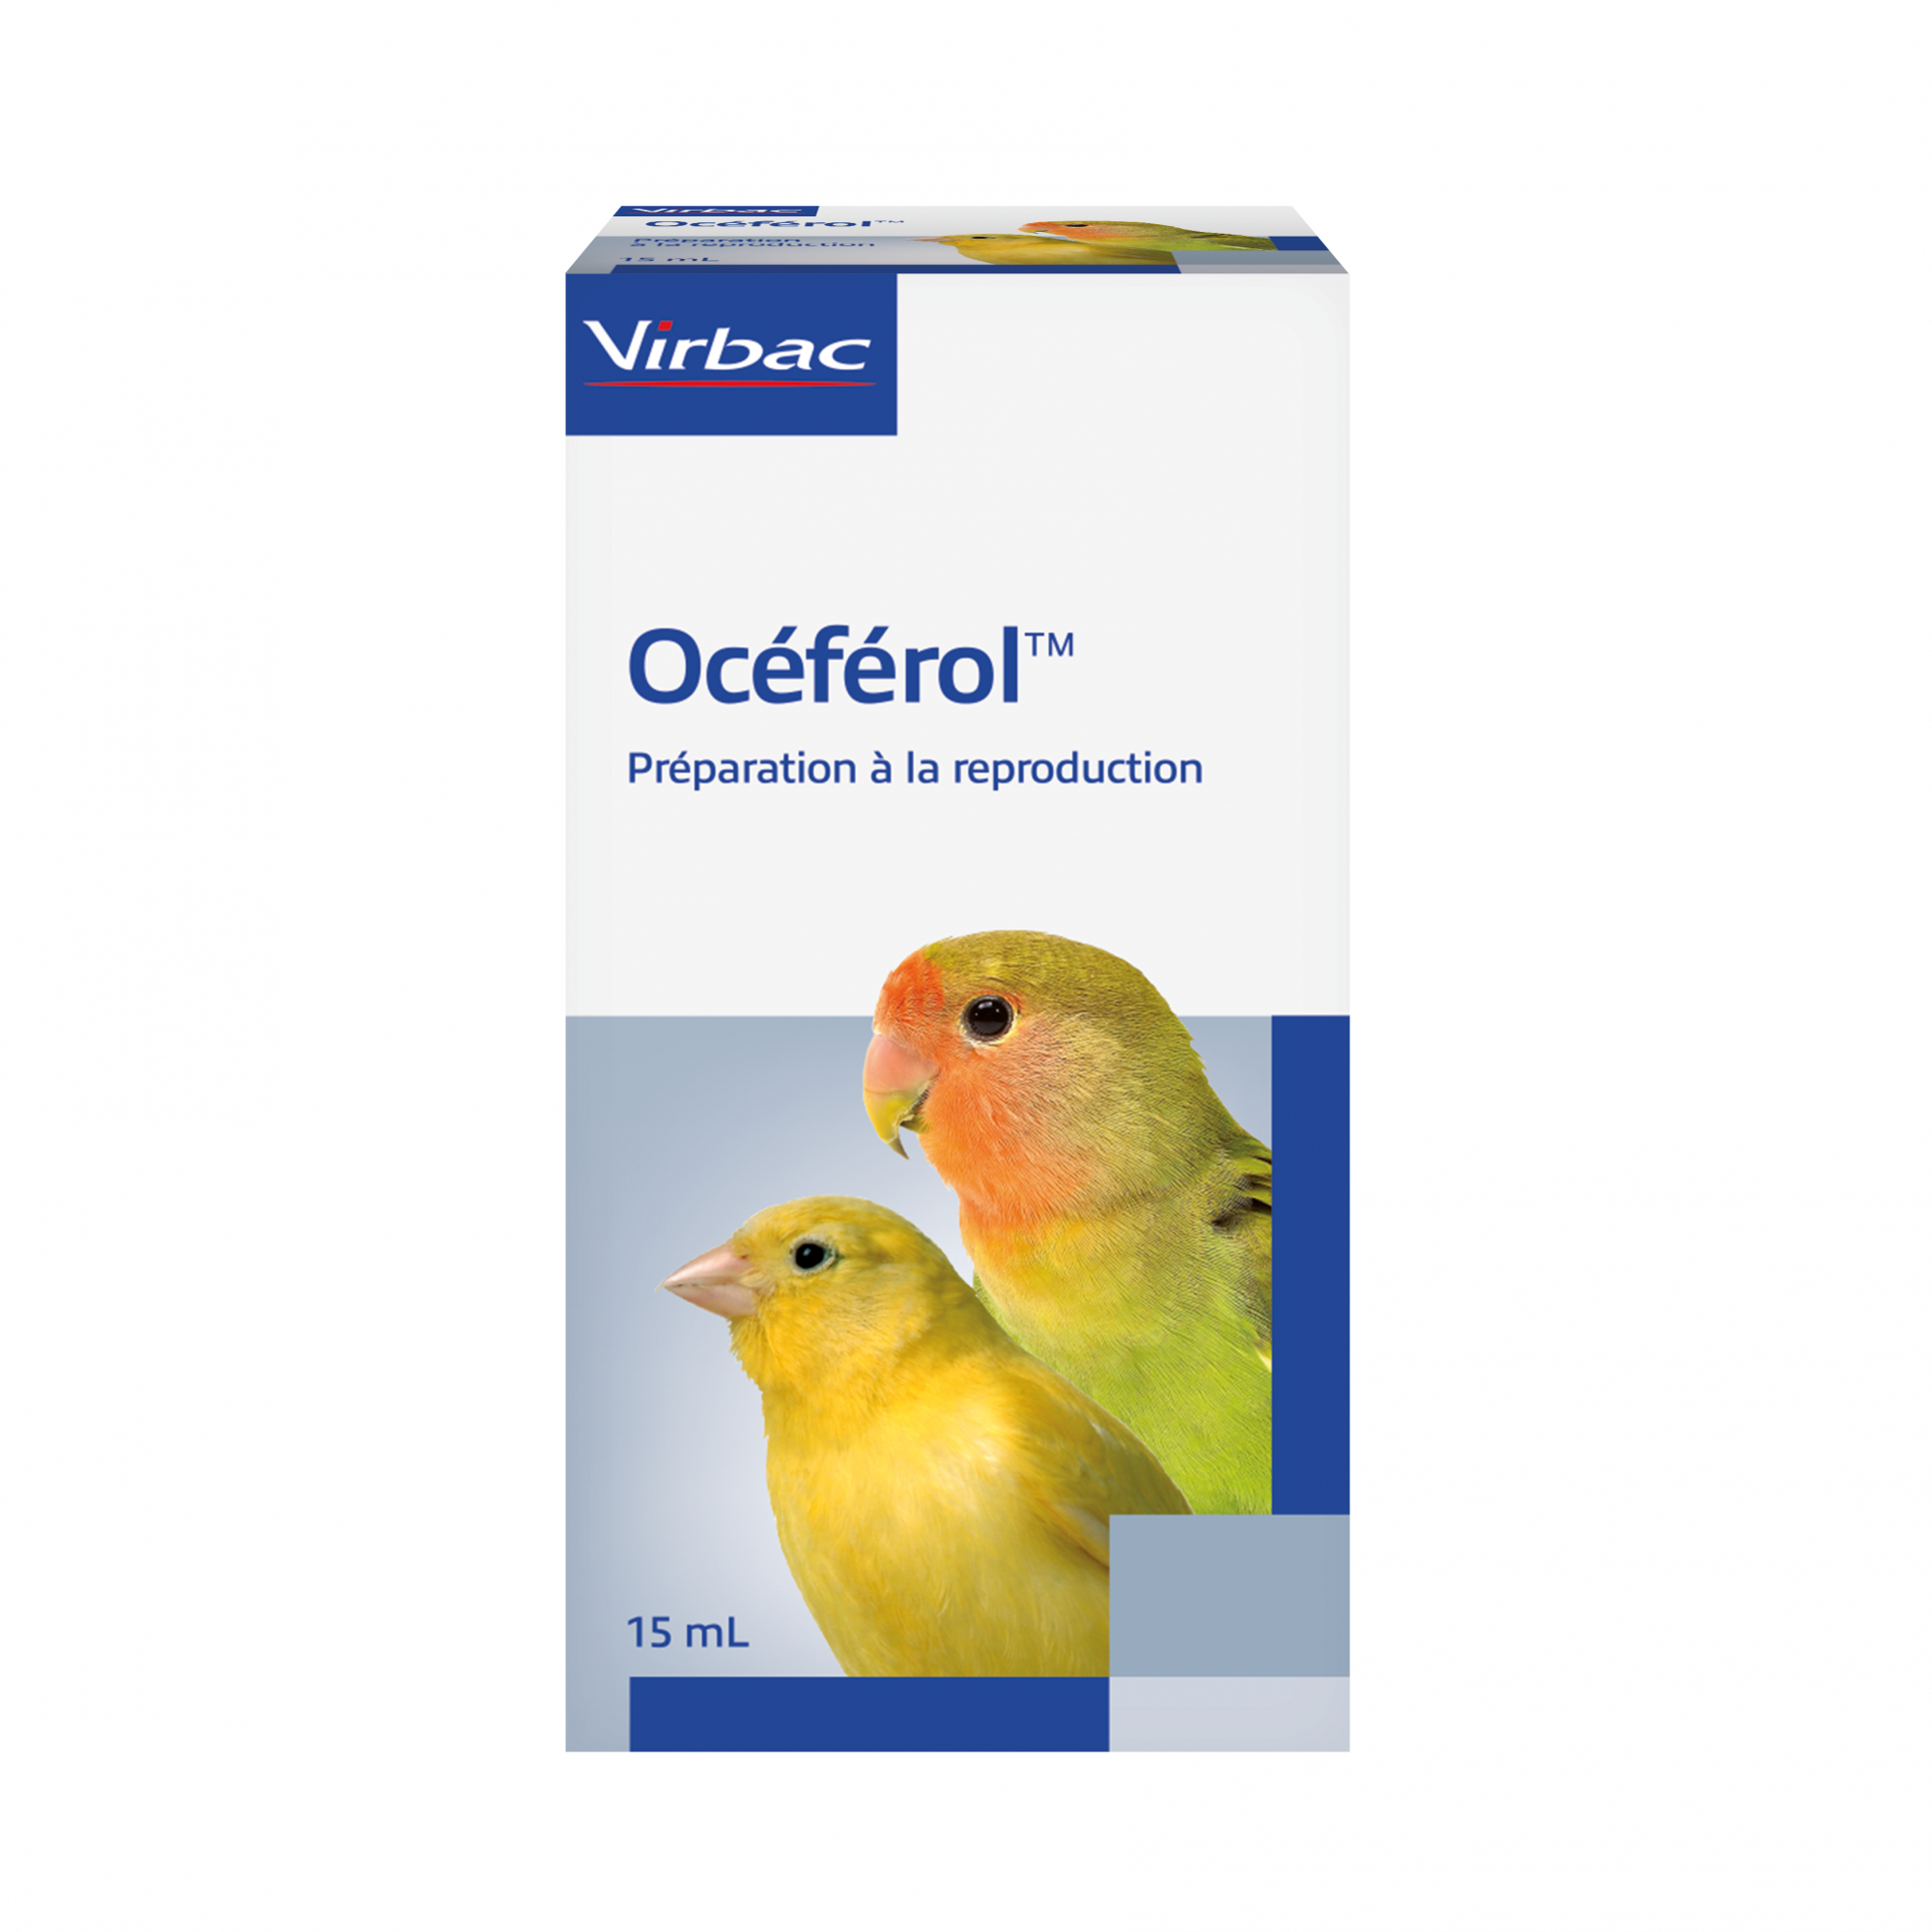 Virbac Oceferol Vitamine E per la riproduzione degli uccelli